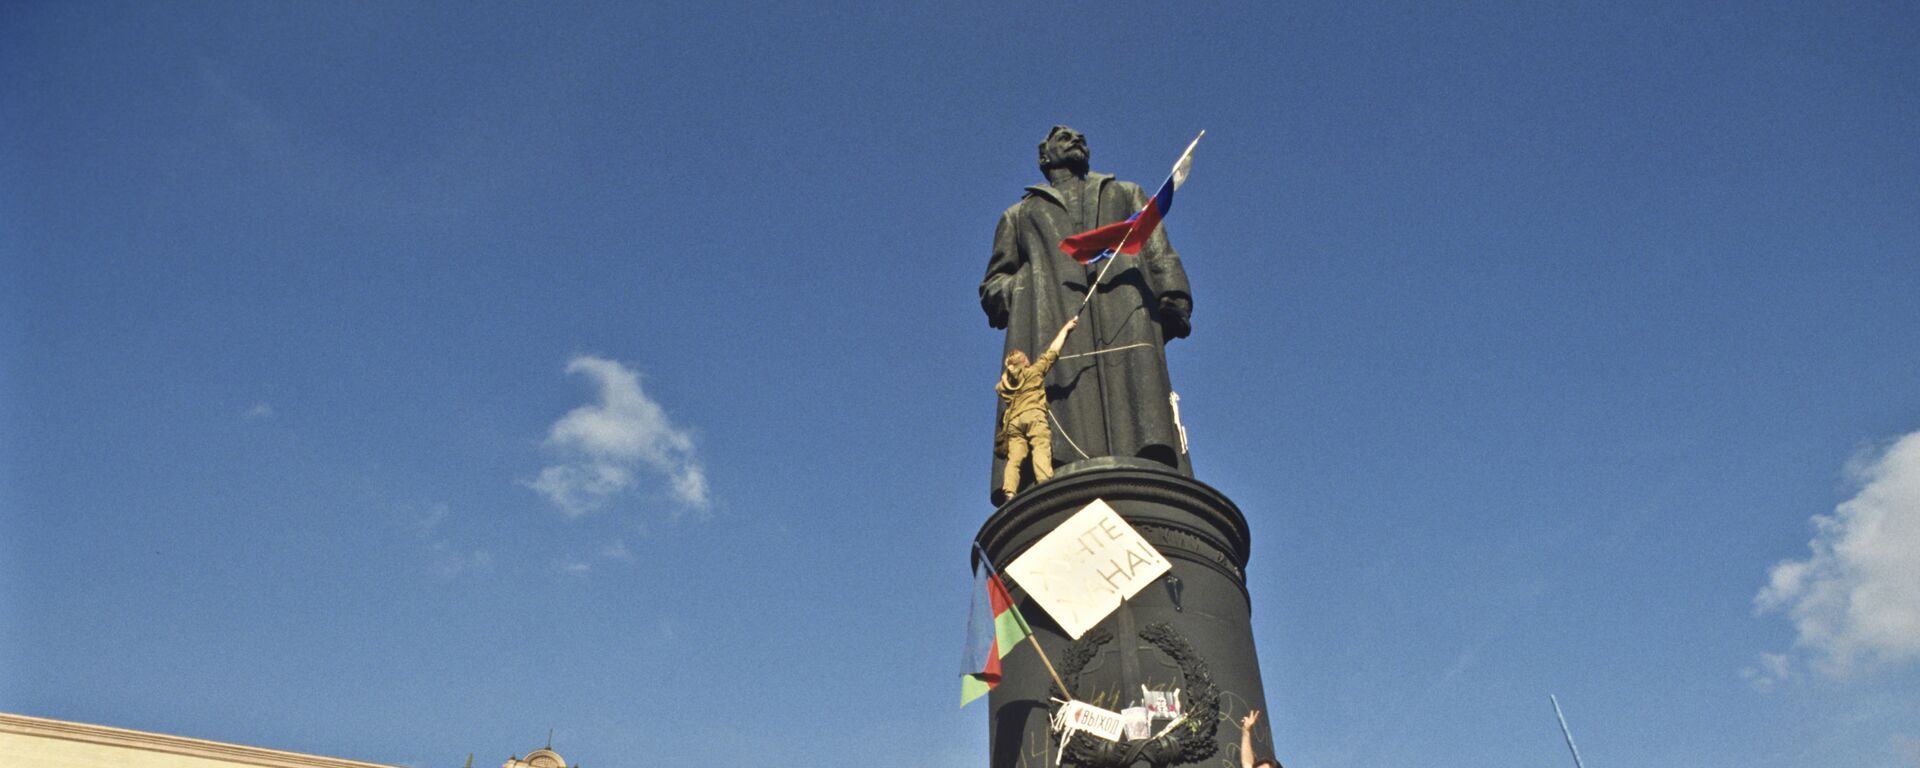 У памятника Феликсу Дзержинскому на Лубянской площади, у здания КГБ СССР 22 августа 1991 года. - Sputnik Узбекистан, 1920, 20.02.2021